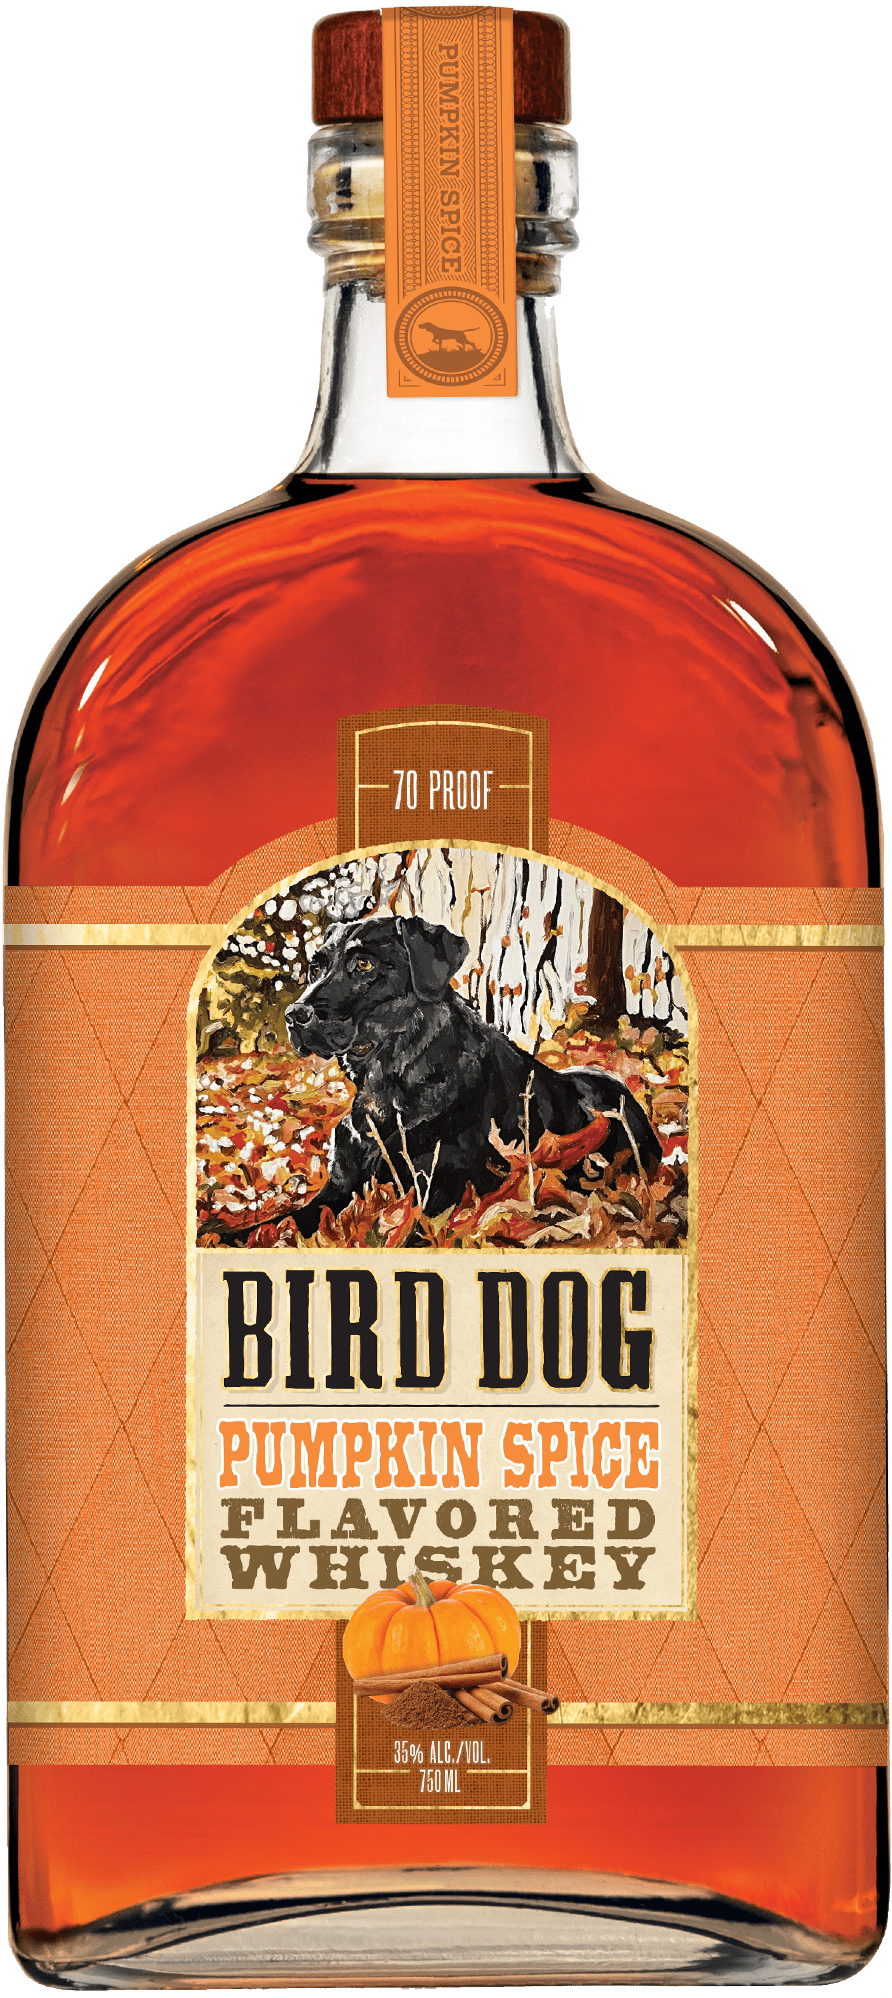 bottle of bird dog pumpkin spice flavored whiskey